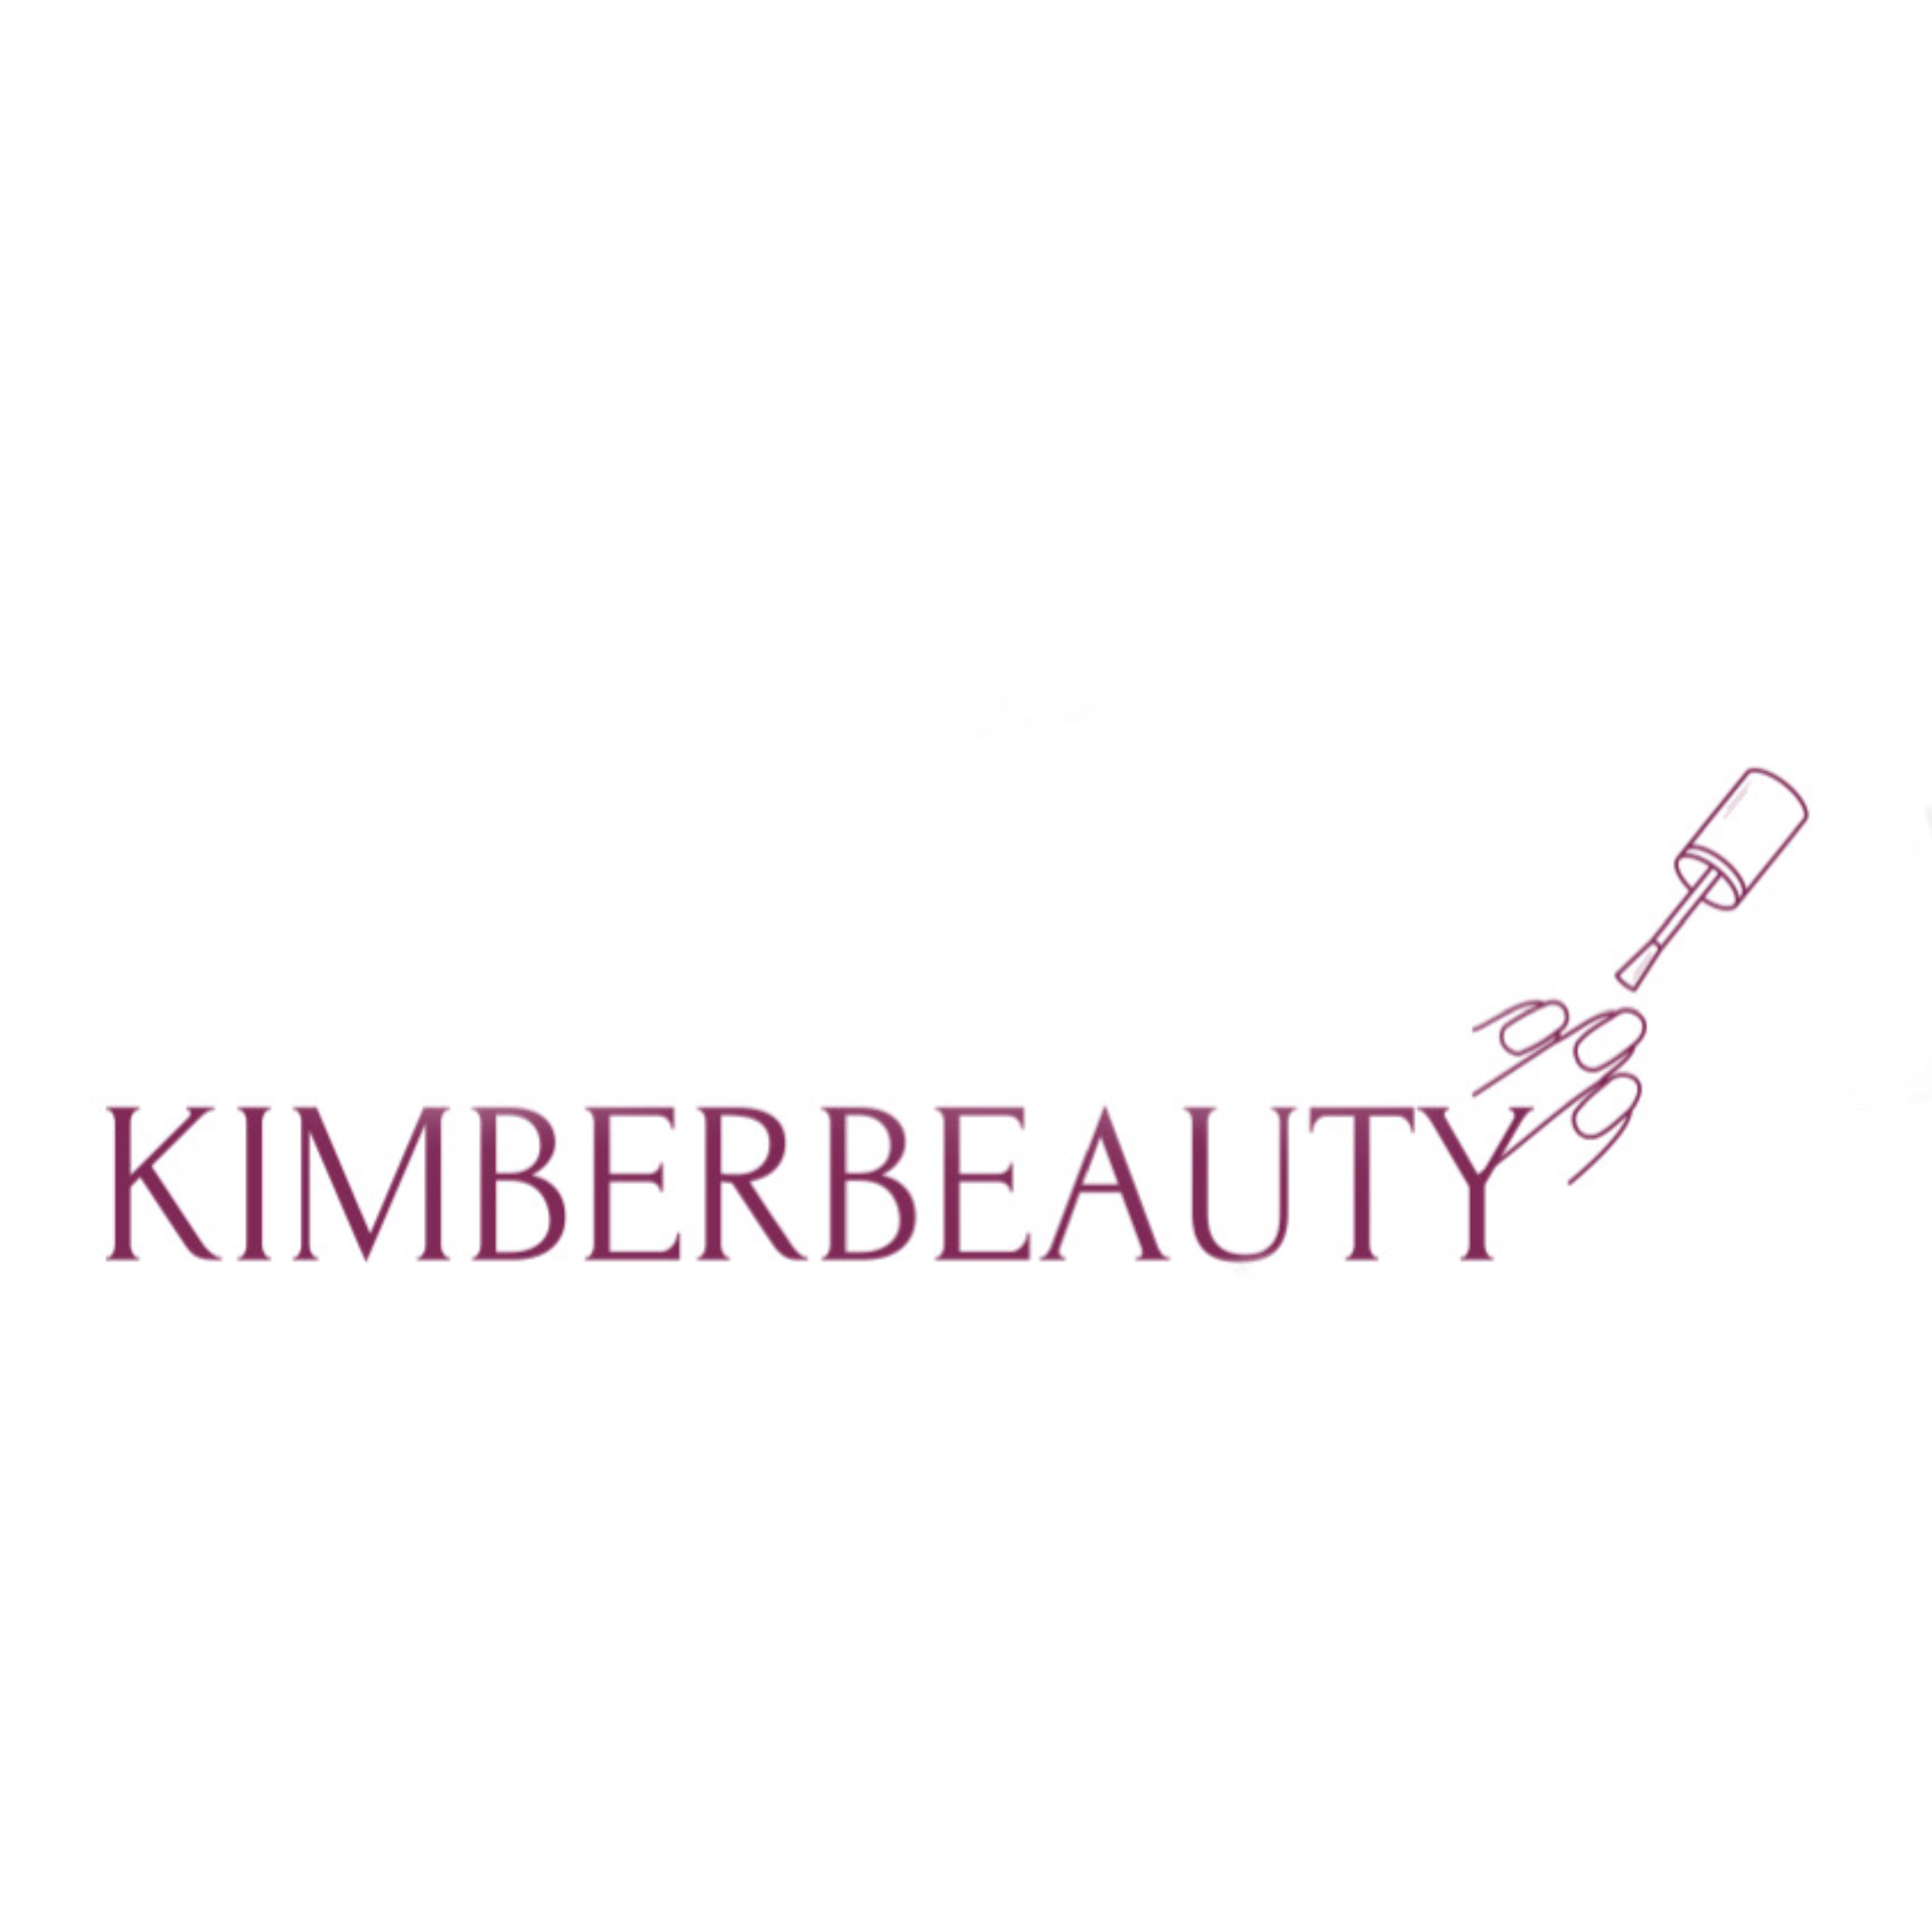 Kimberbeauty